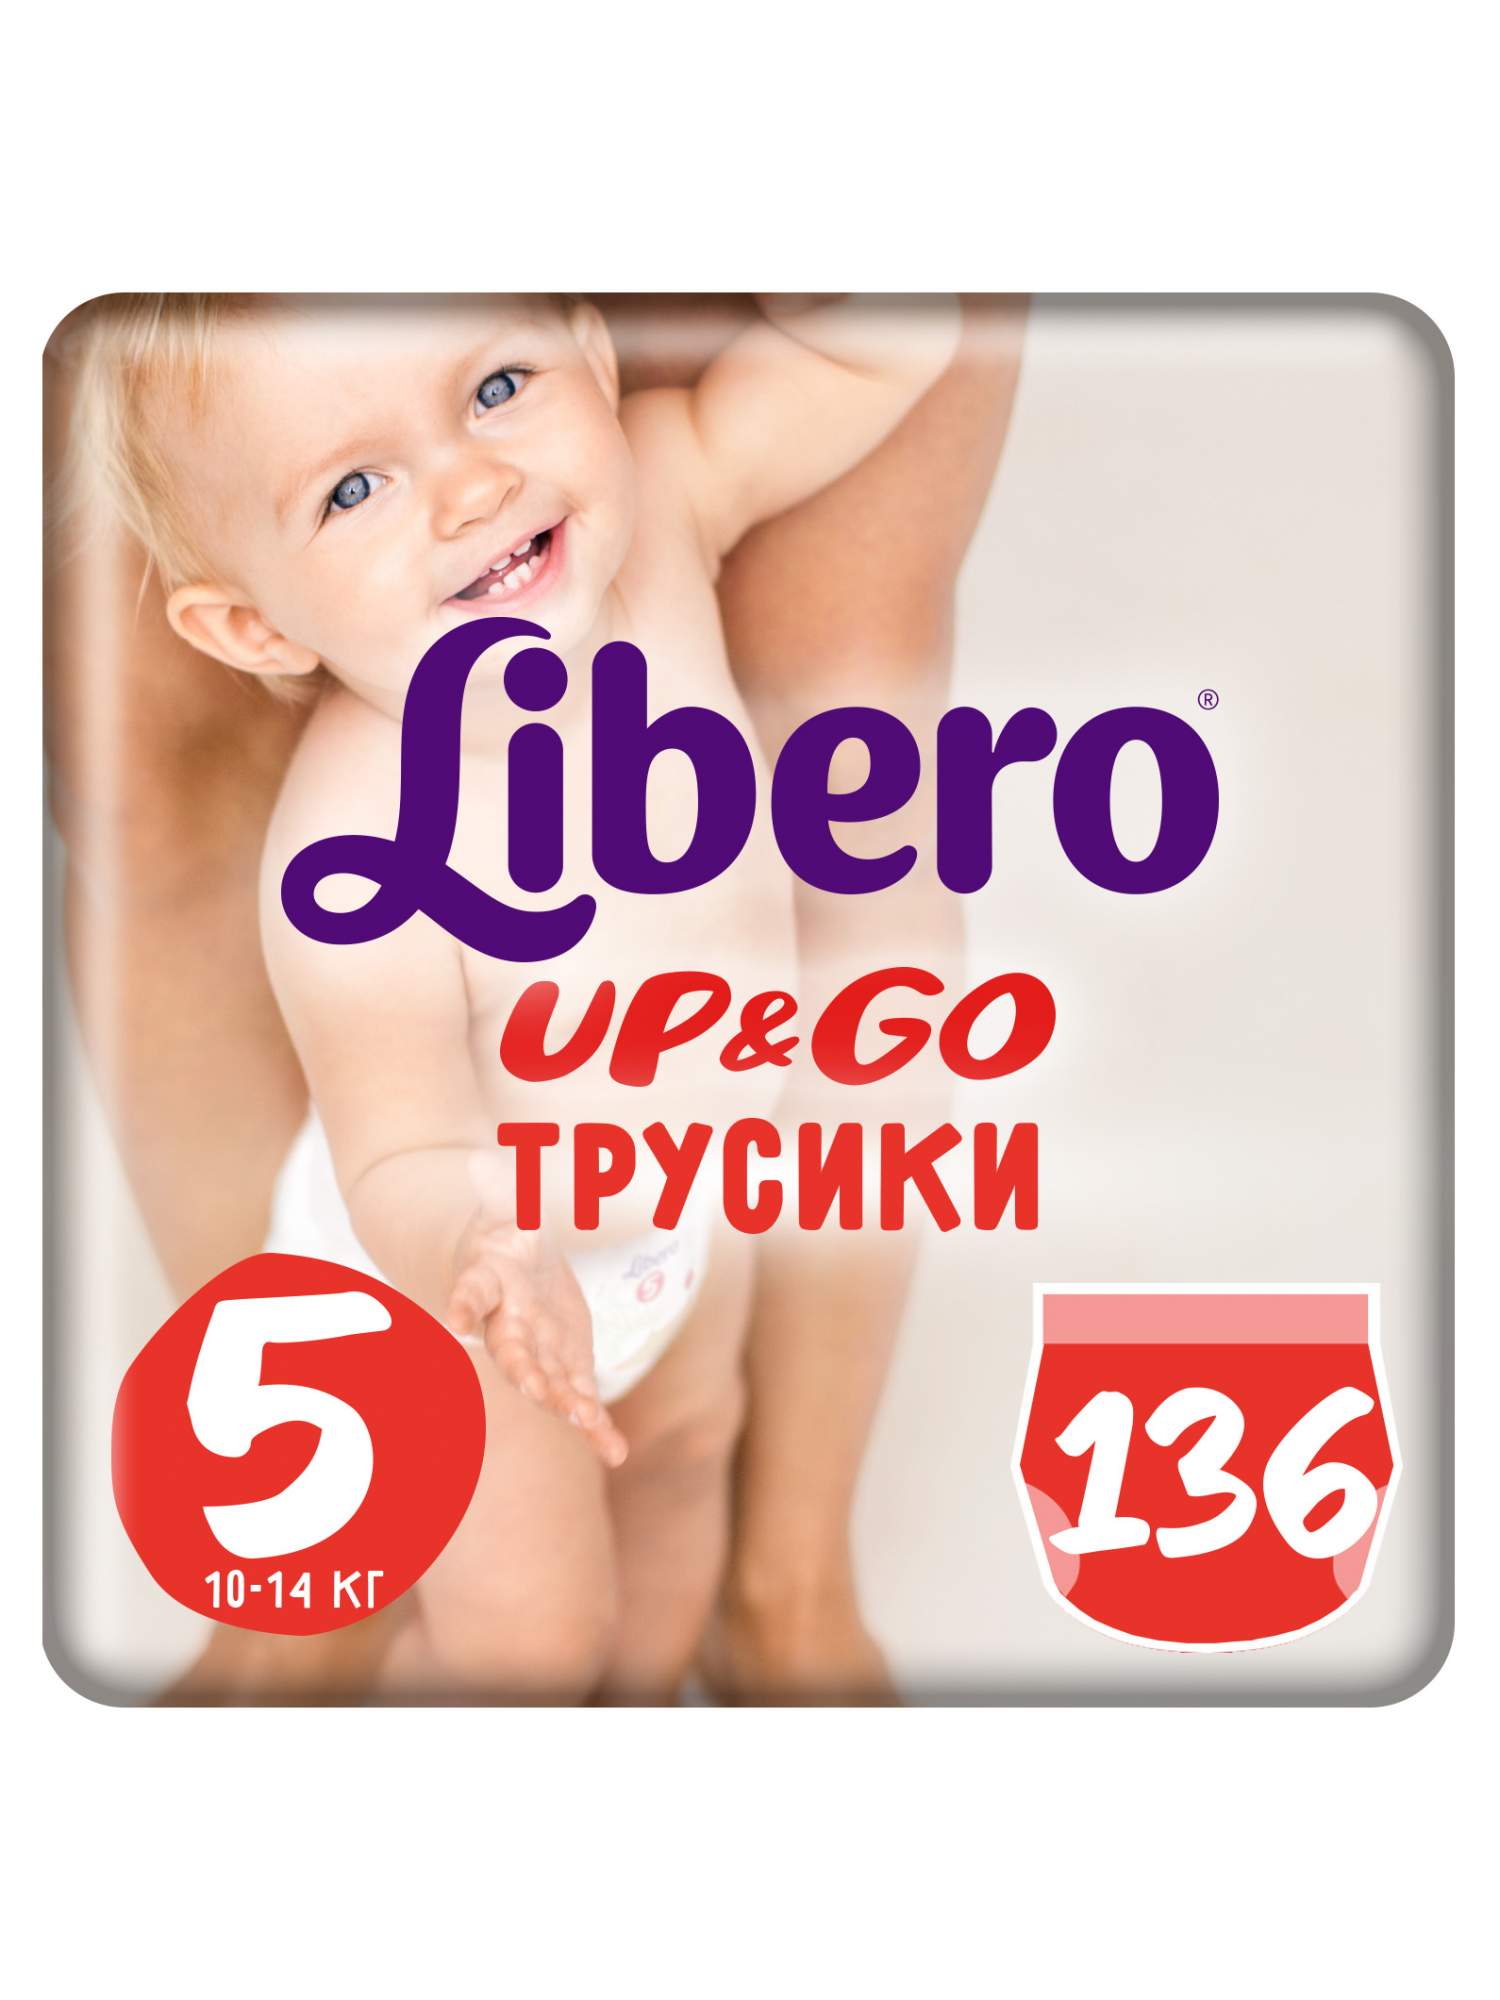 Трусики Libero Up & Go 5 (10-14 кг) - 136 шт (2 х 68 шт)